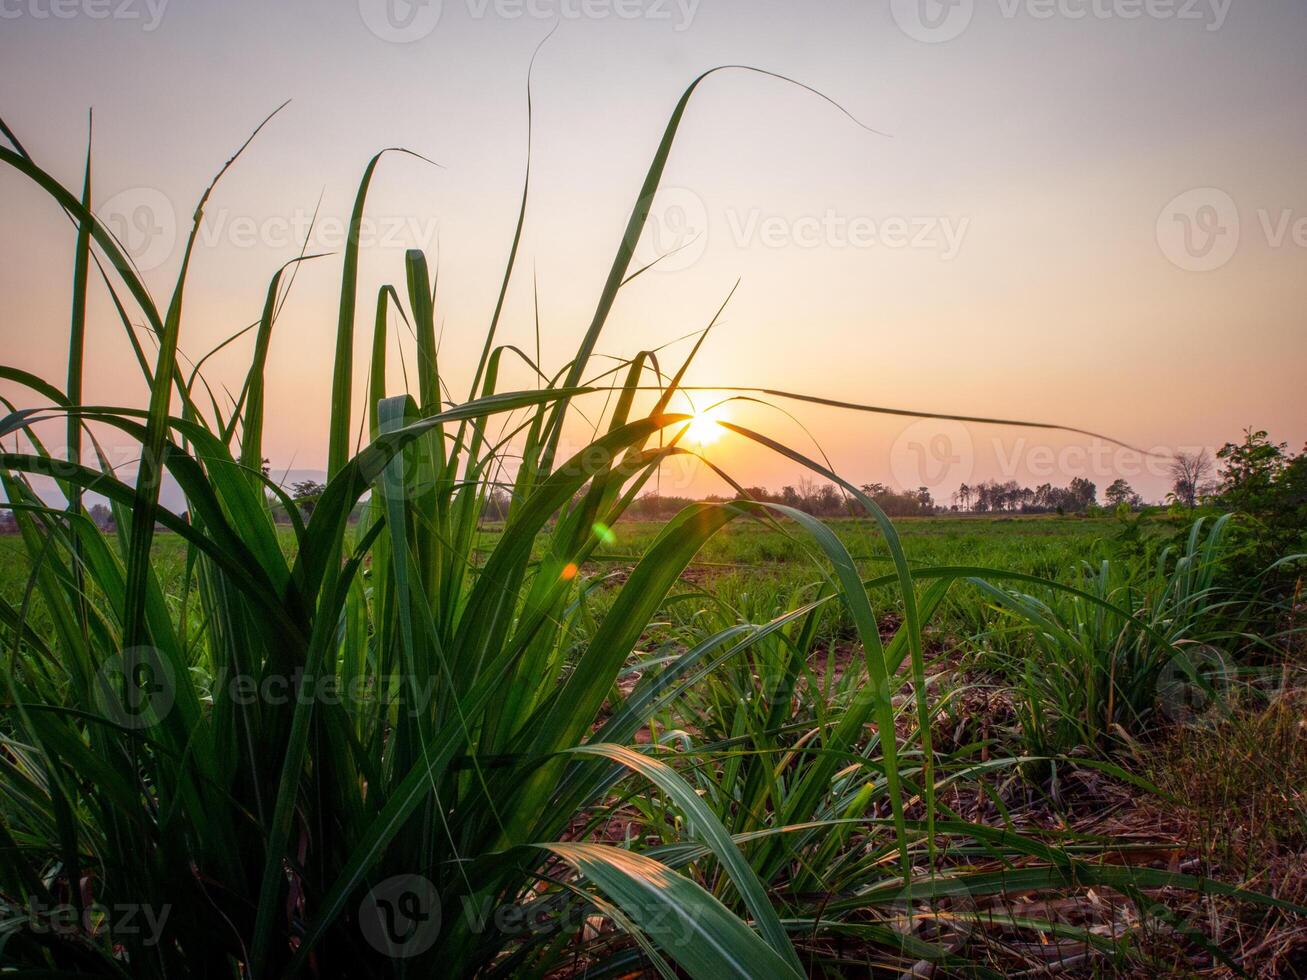 canna da zucchero piantagioni, il agricoltura tropicale pianta nel Tailandia foto